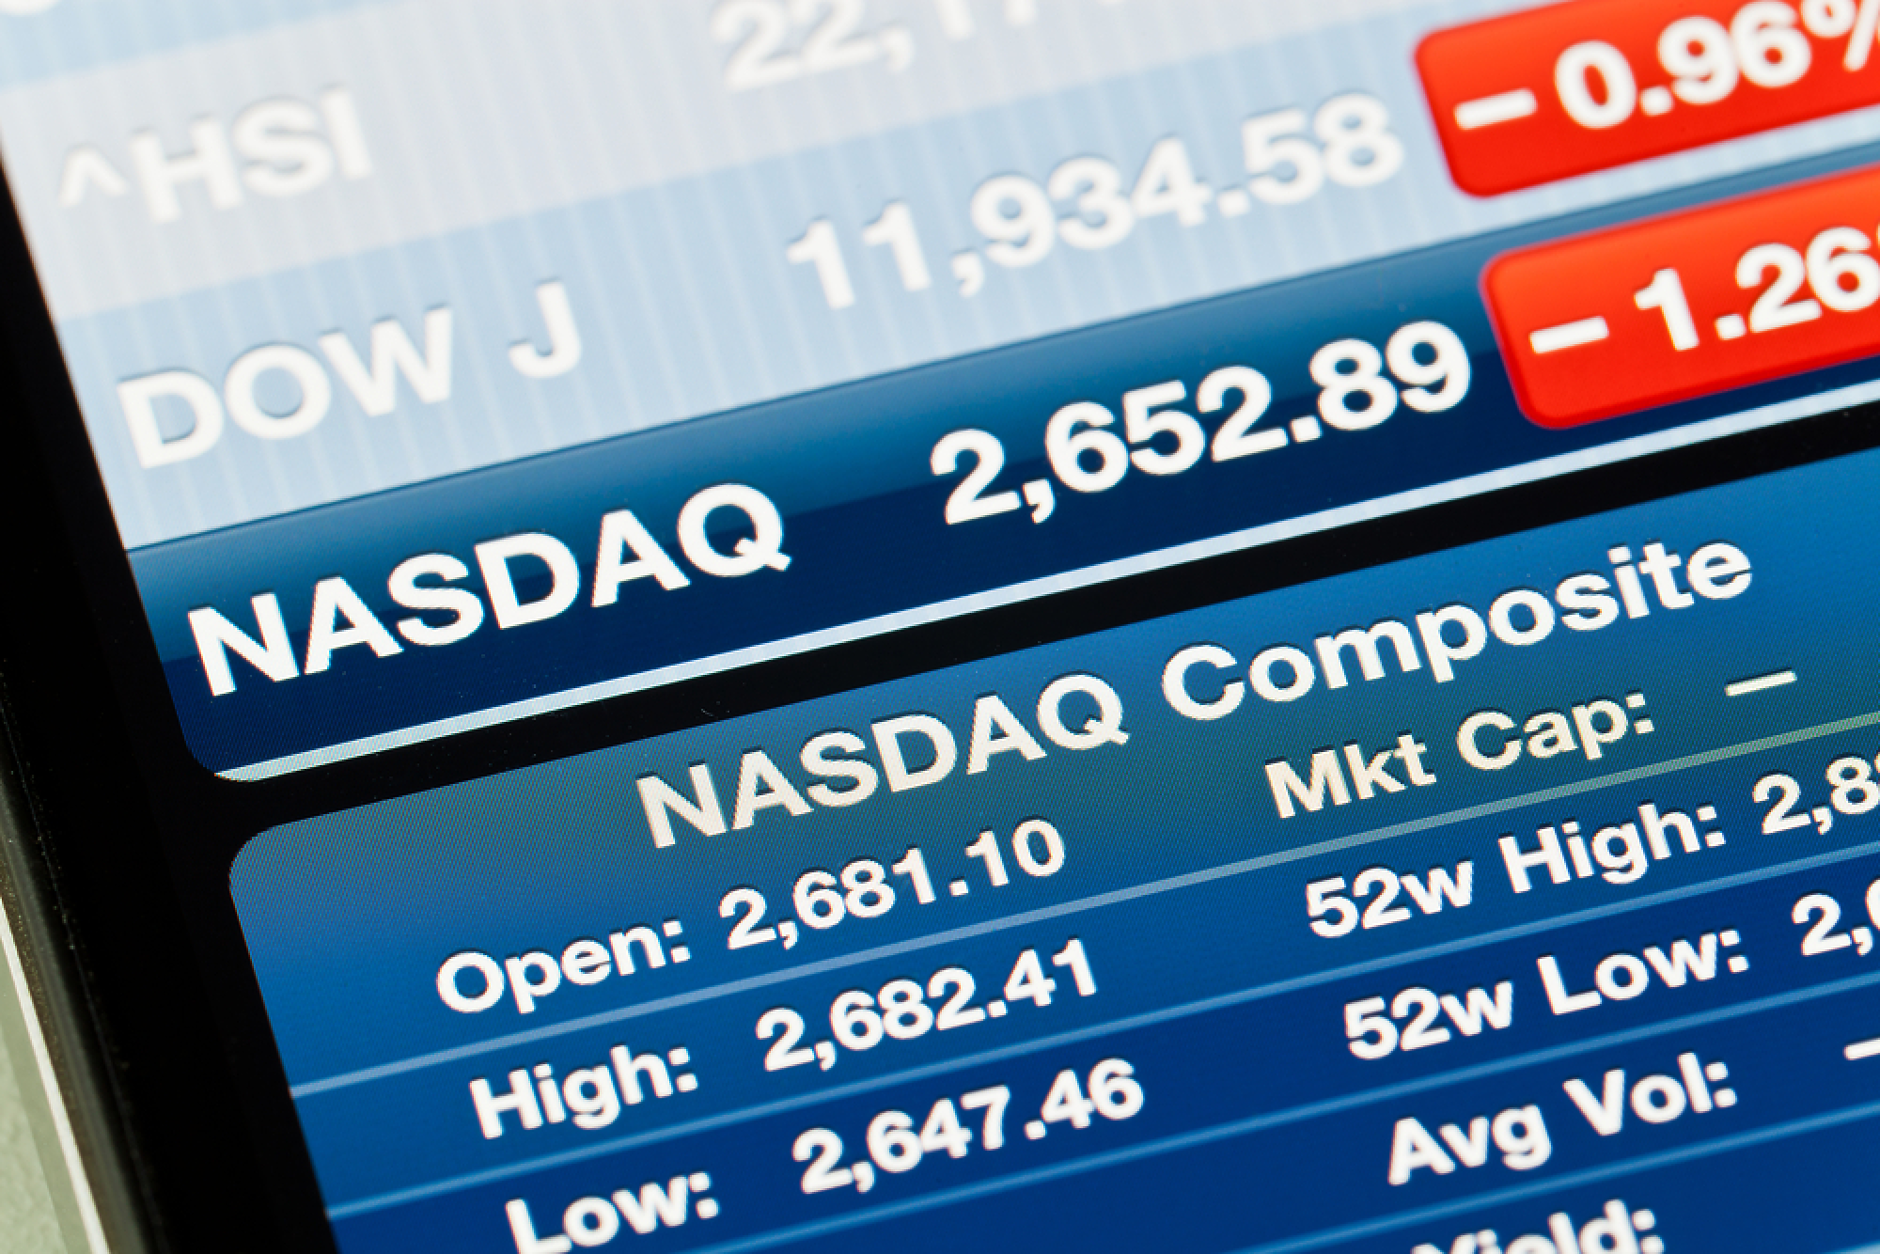 Анализатор прогнозира обрат надолу за индексите Nasdaq и Dow 